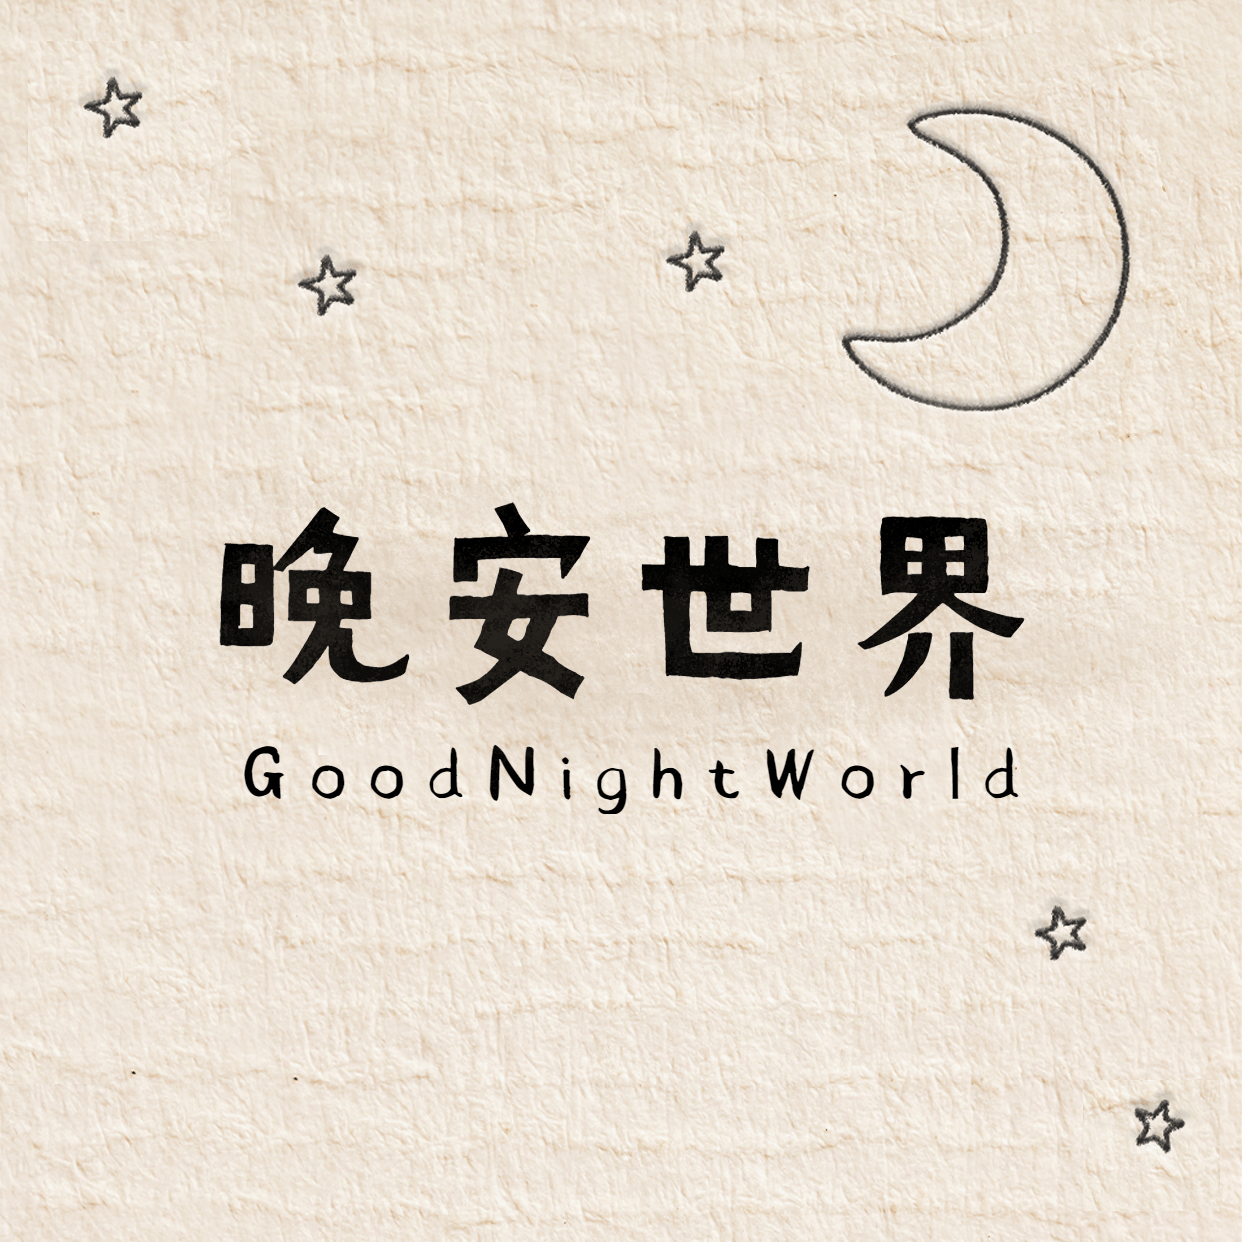 晚安世界方形海报